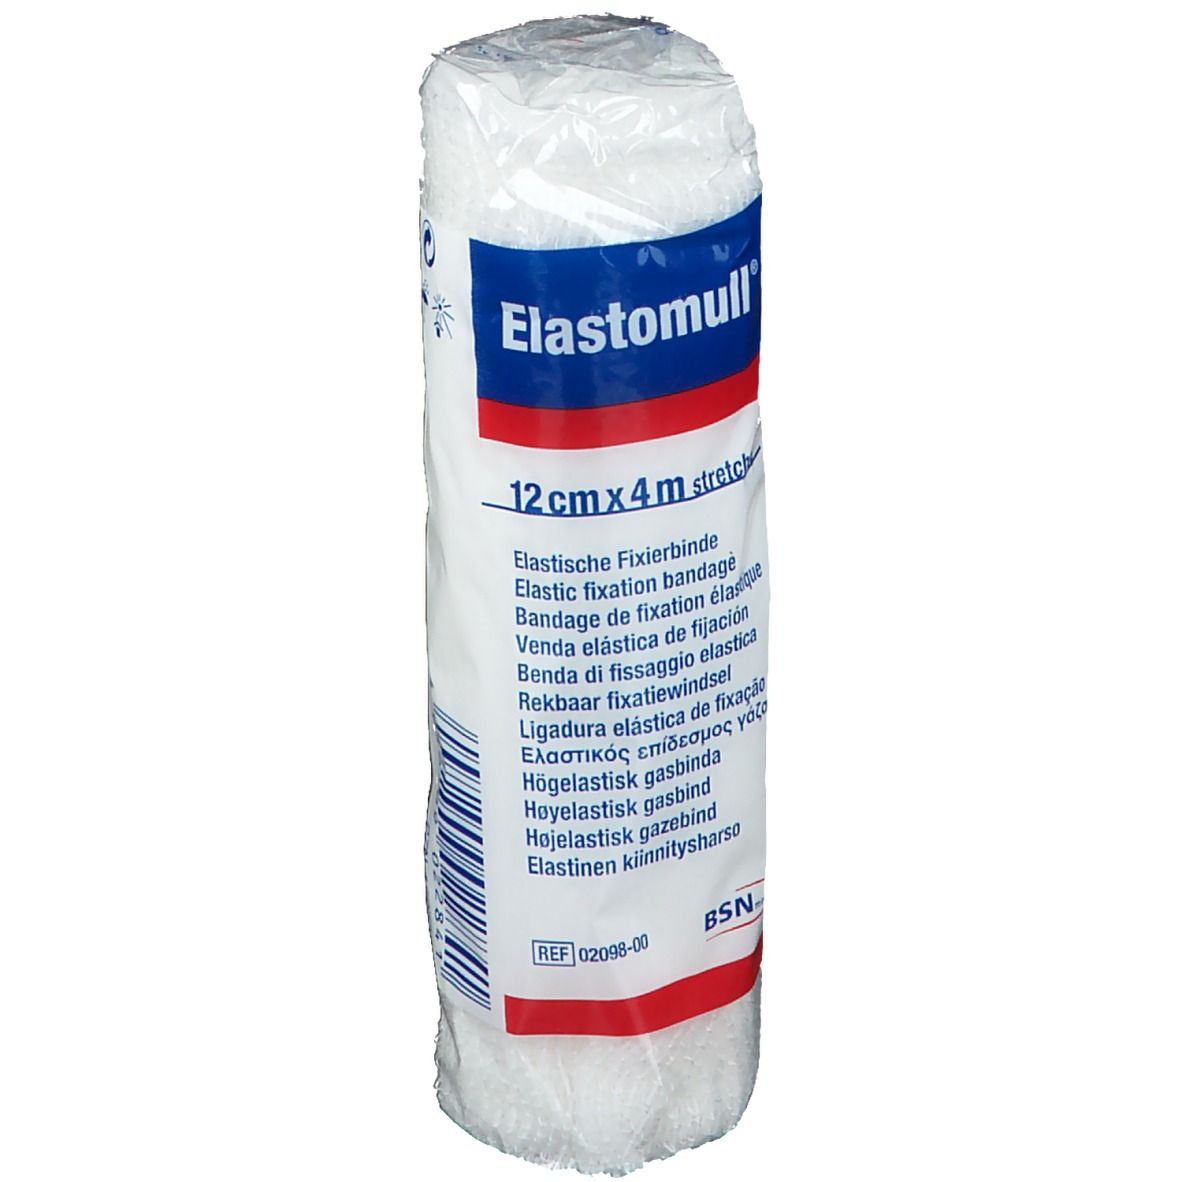 Elastomull® elastische Fixierbinde 4 m x 12 cm in Polypropylen